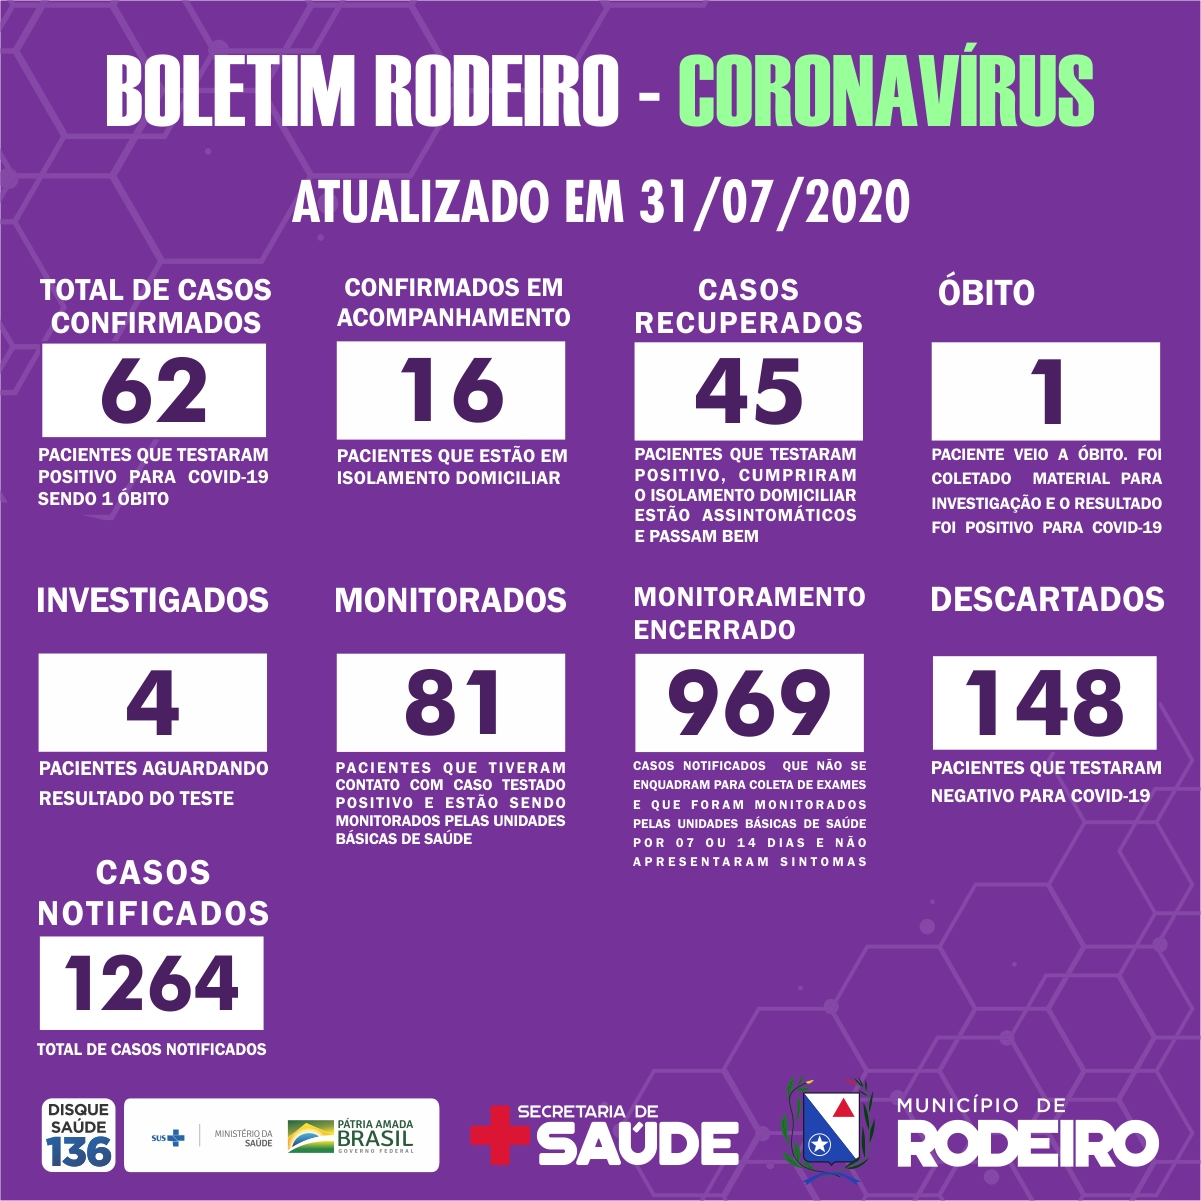 Boletim Epidemiológico do Município de Rodeiro coronavírus, atualizado em 31/07/2020